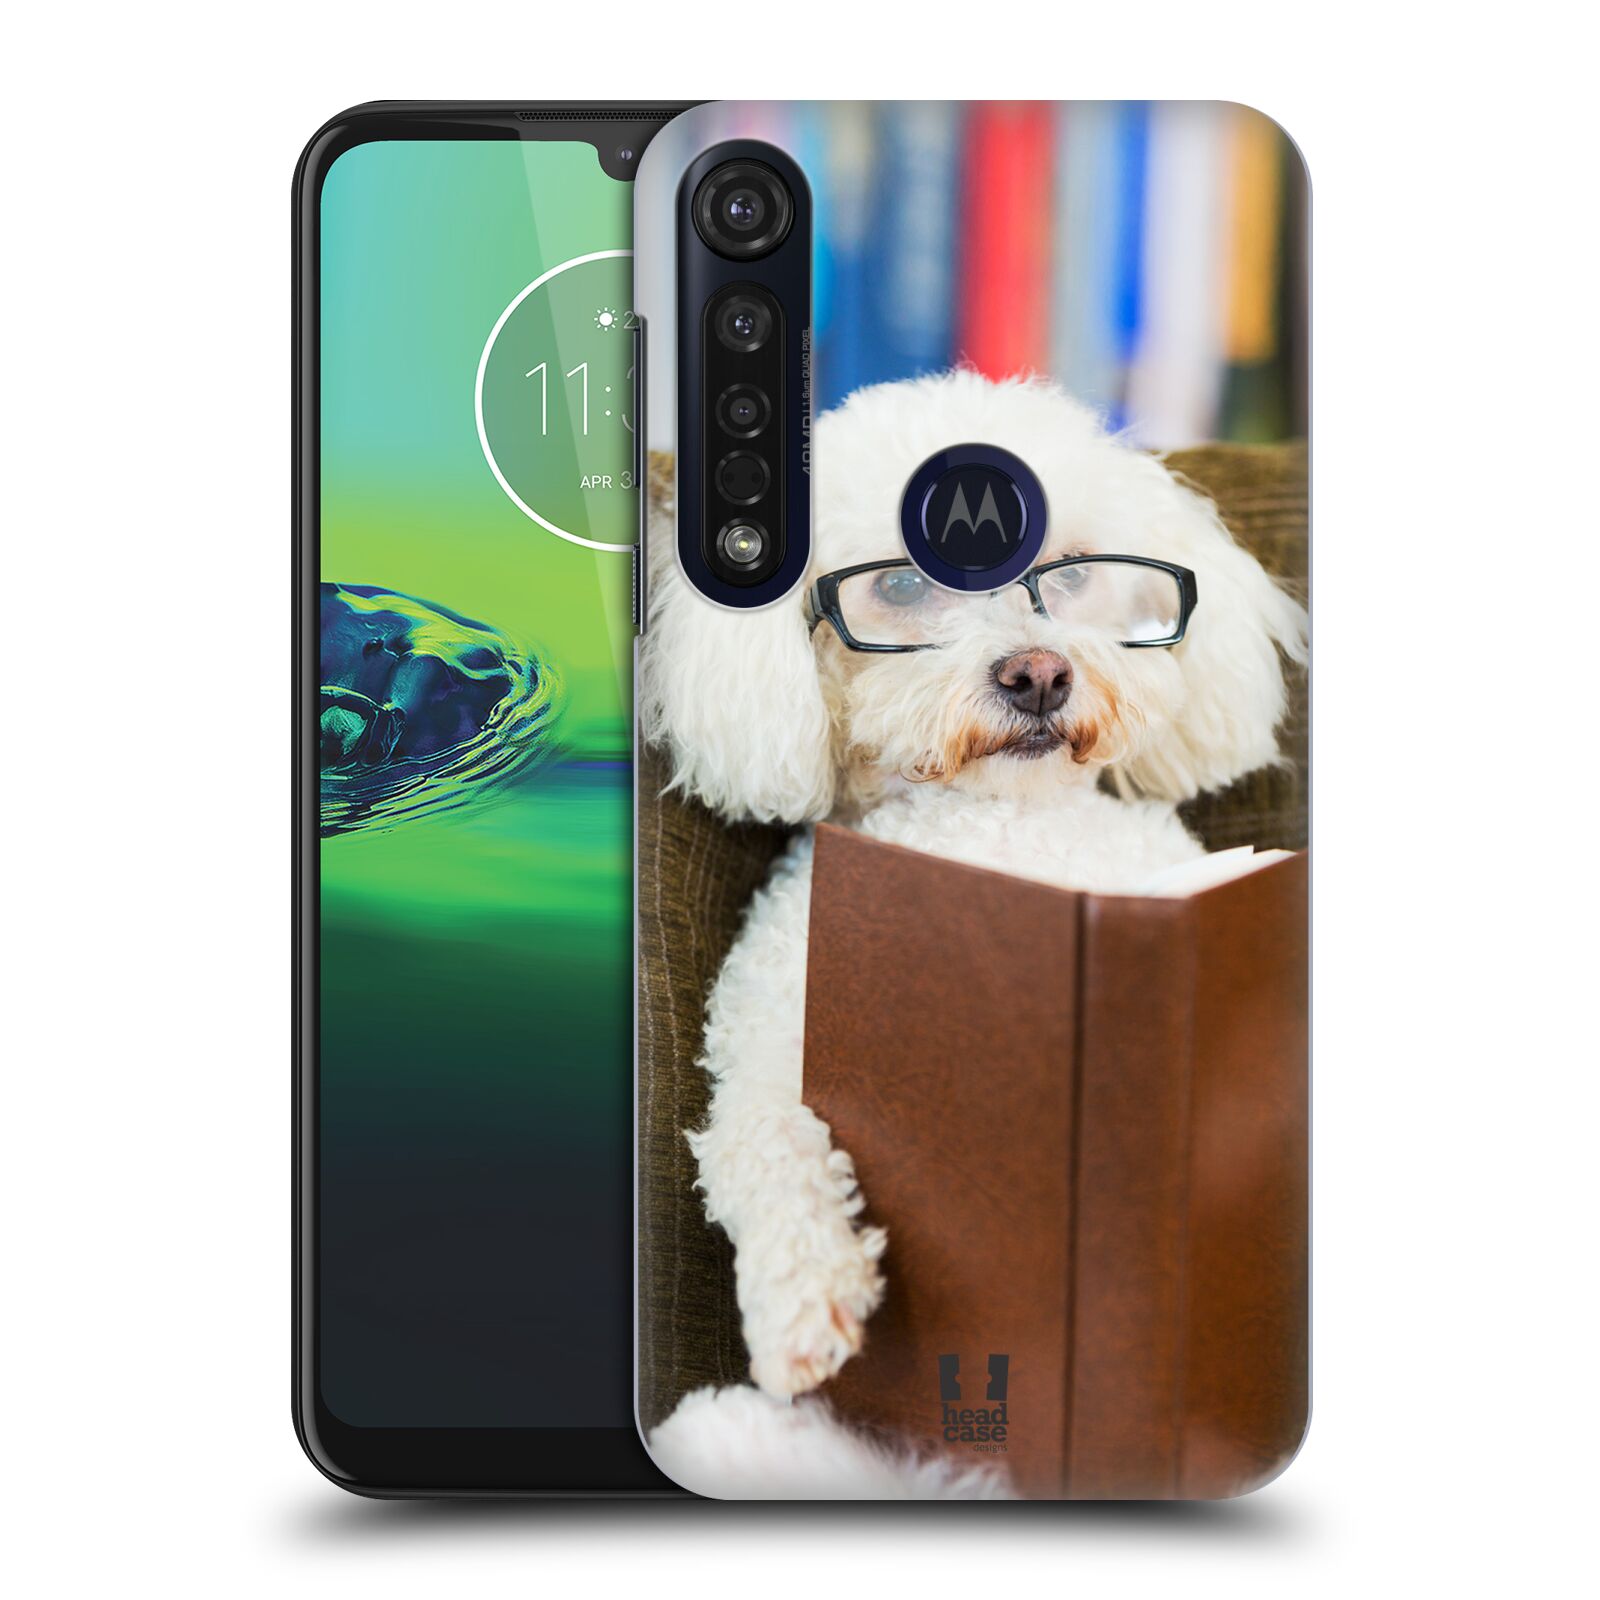 Pouzdro na mobil Motorola Moto G8 PLUS - HEAD CASE - vzor Legrační zvířátka pejsek čtenář